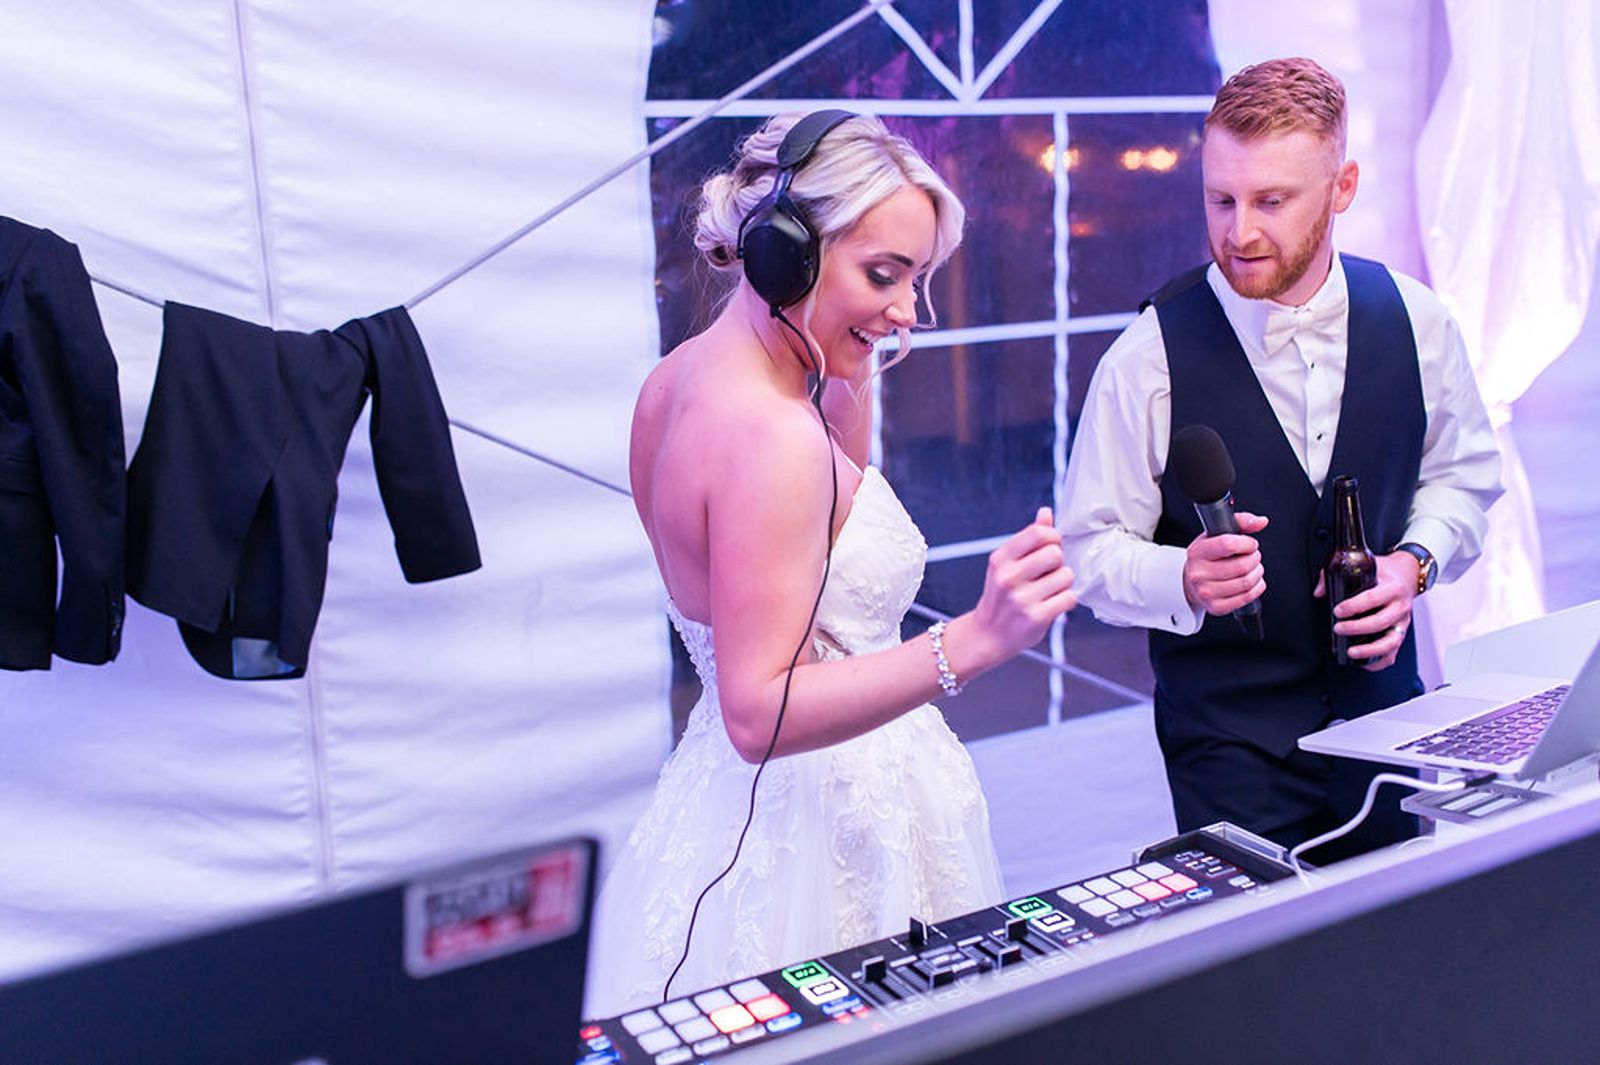 Bride in DJ Booth Wearing Headphones